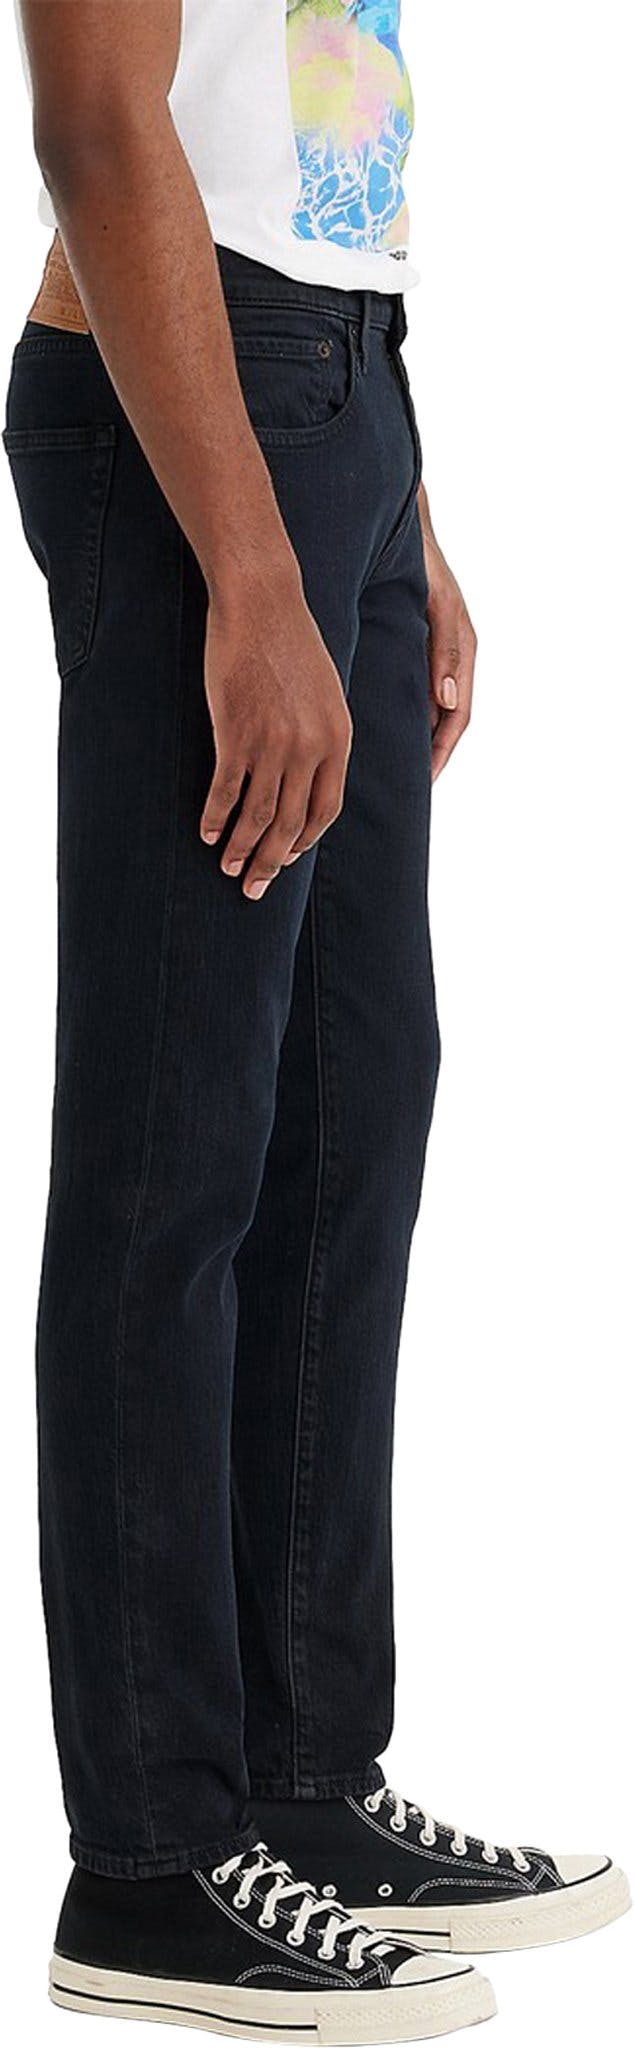 Numéro de l'image de la galerie de produits 3 pour le produit Jeans 512 Slim Taper Fit - Homme